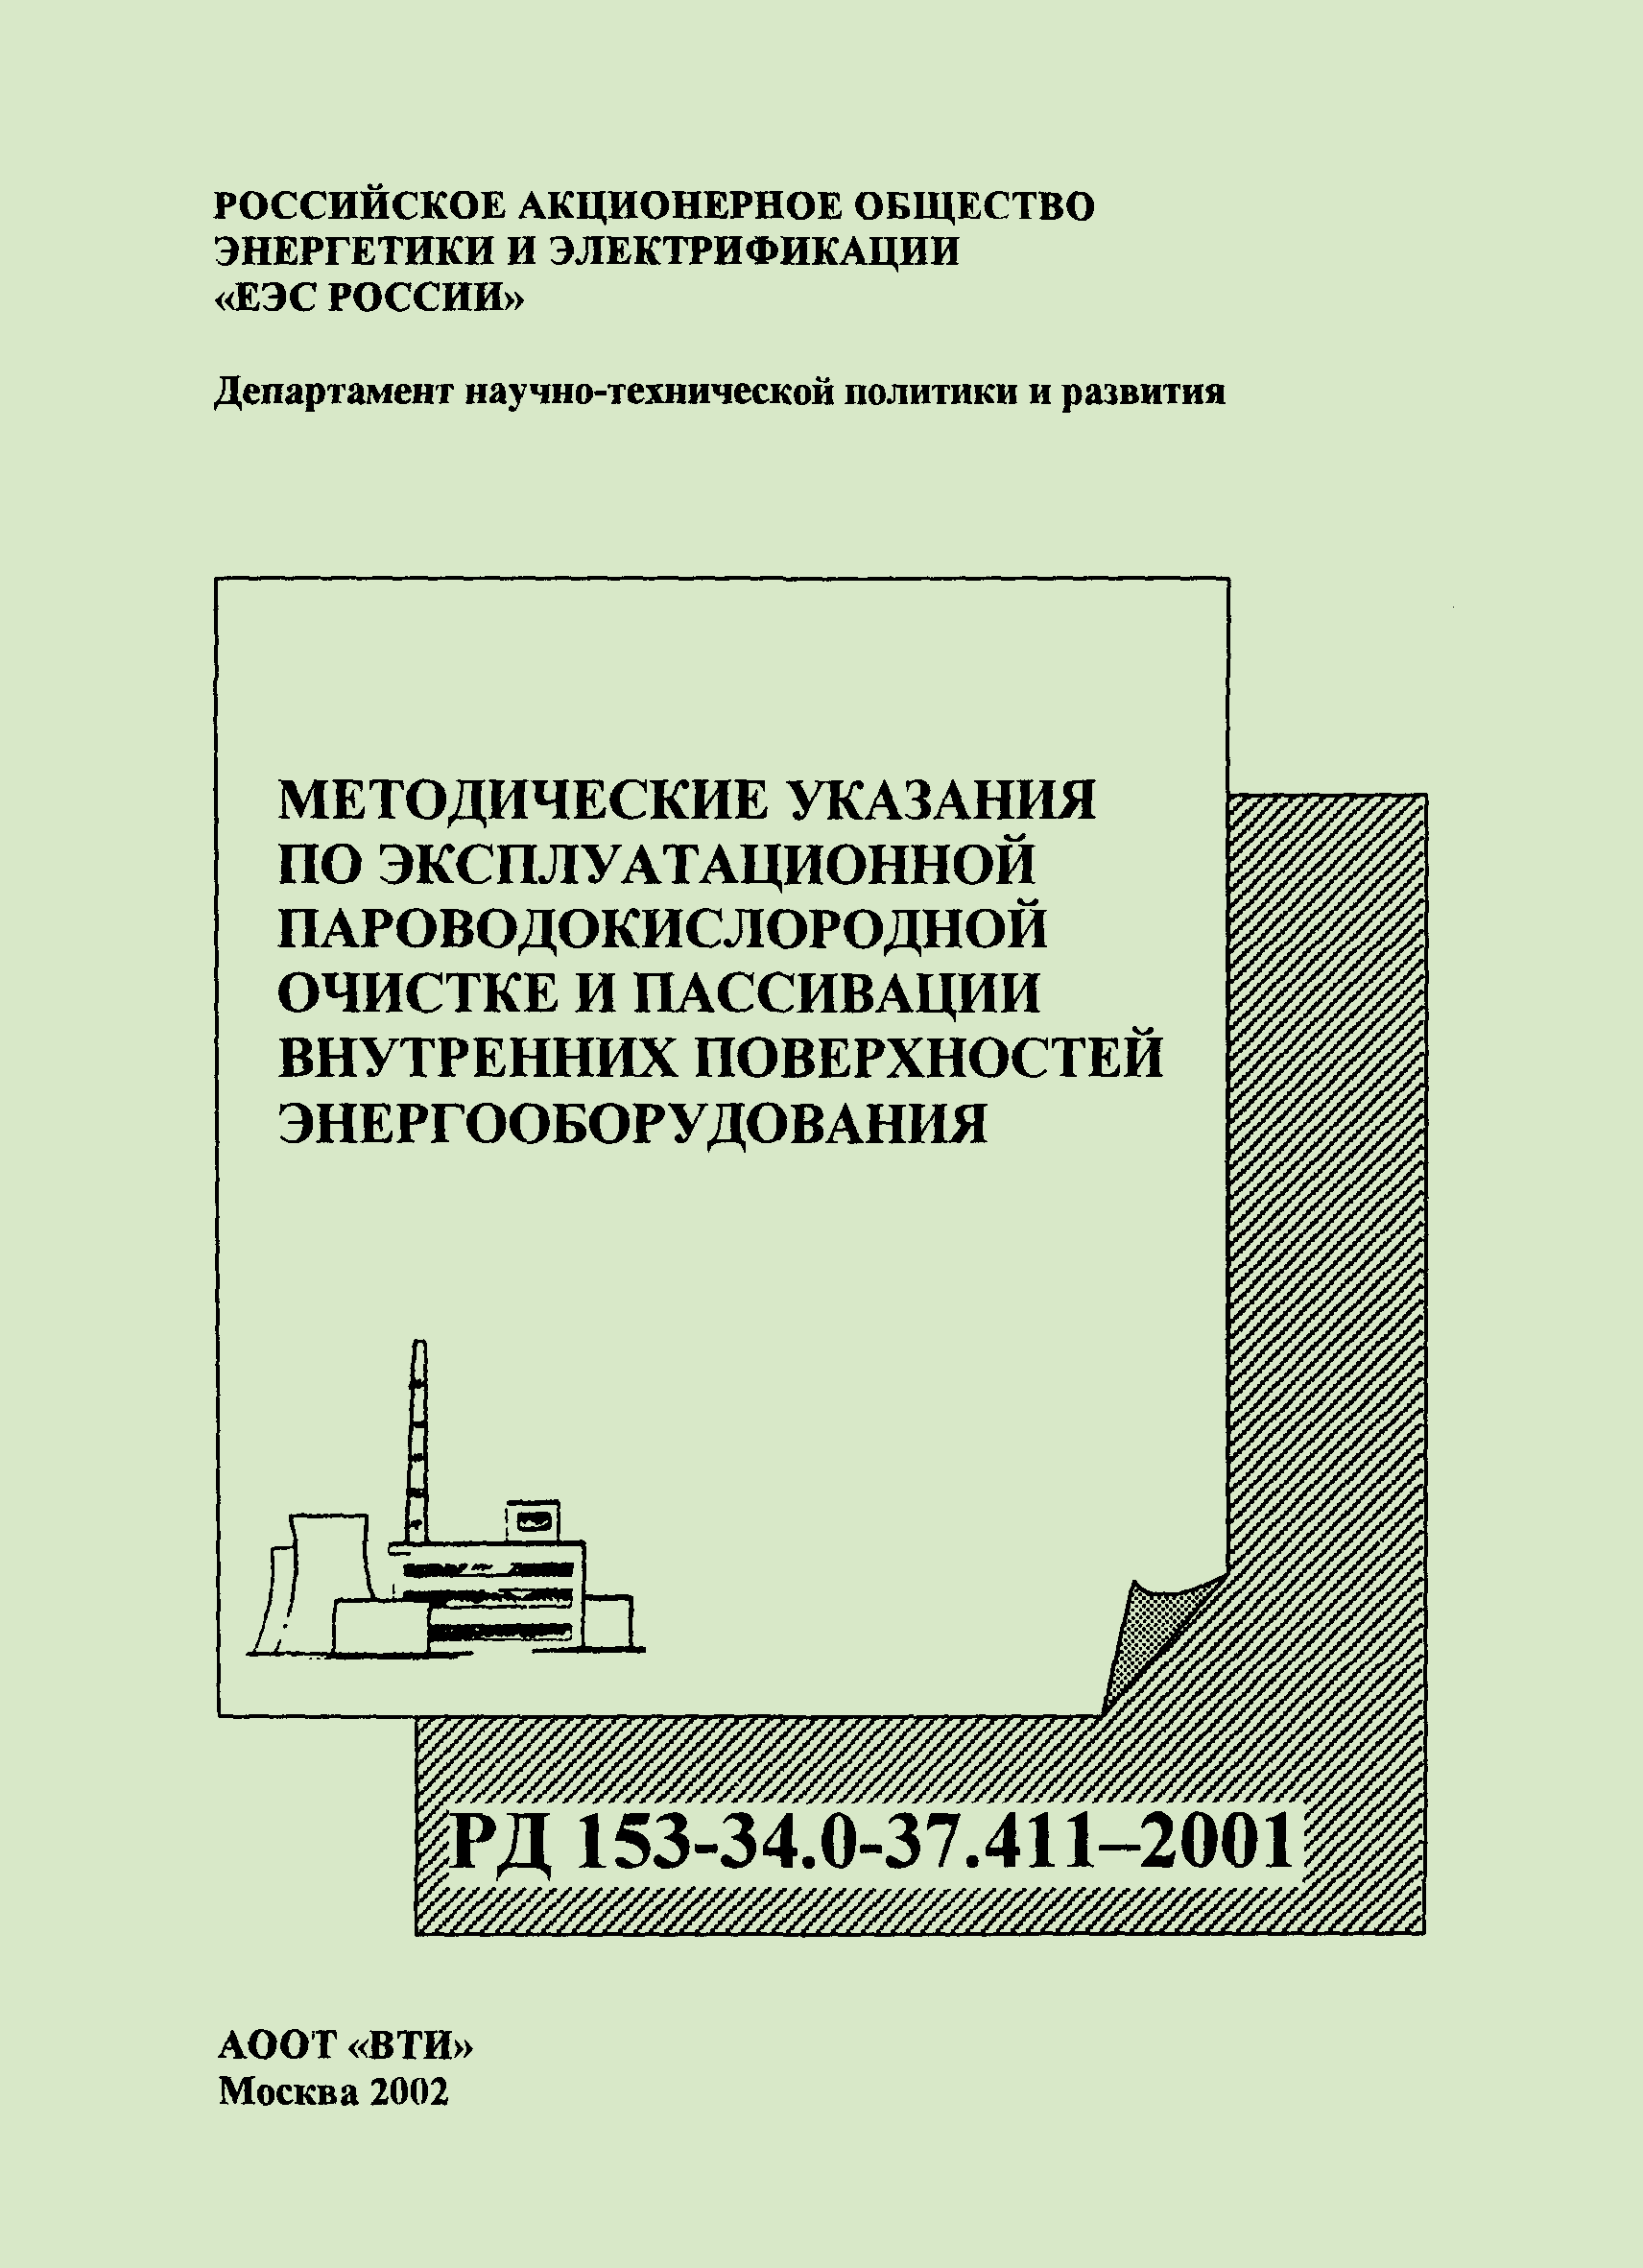 РД 153-34.0-37.411-2001